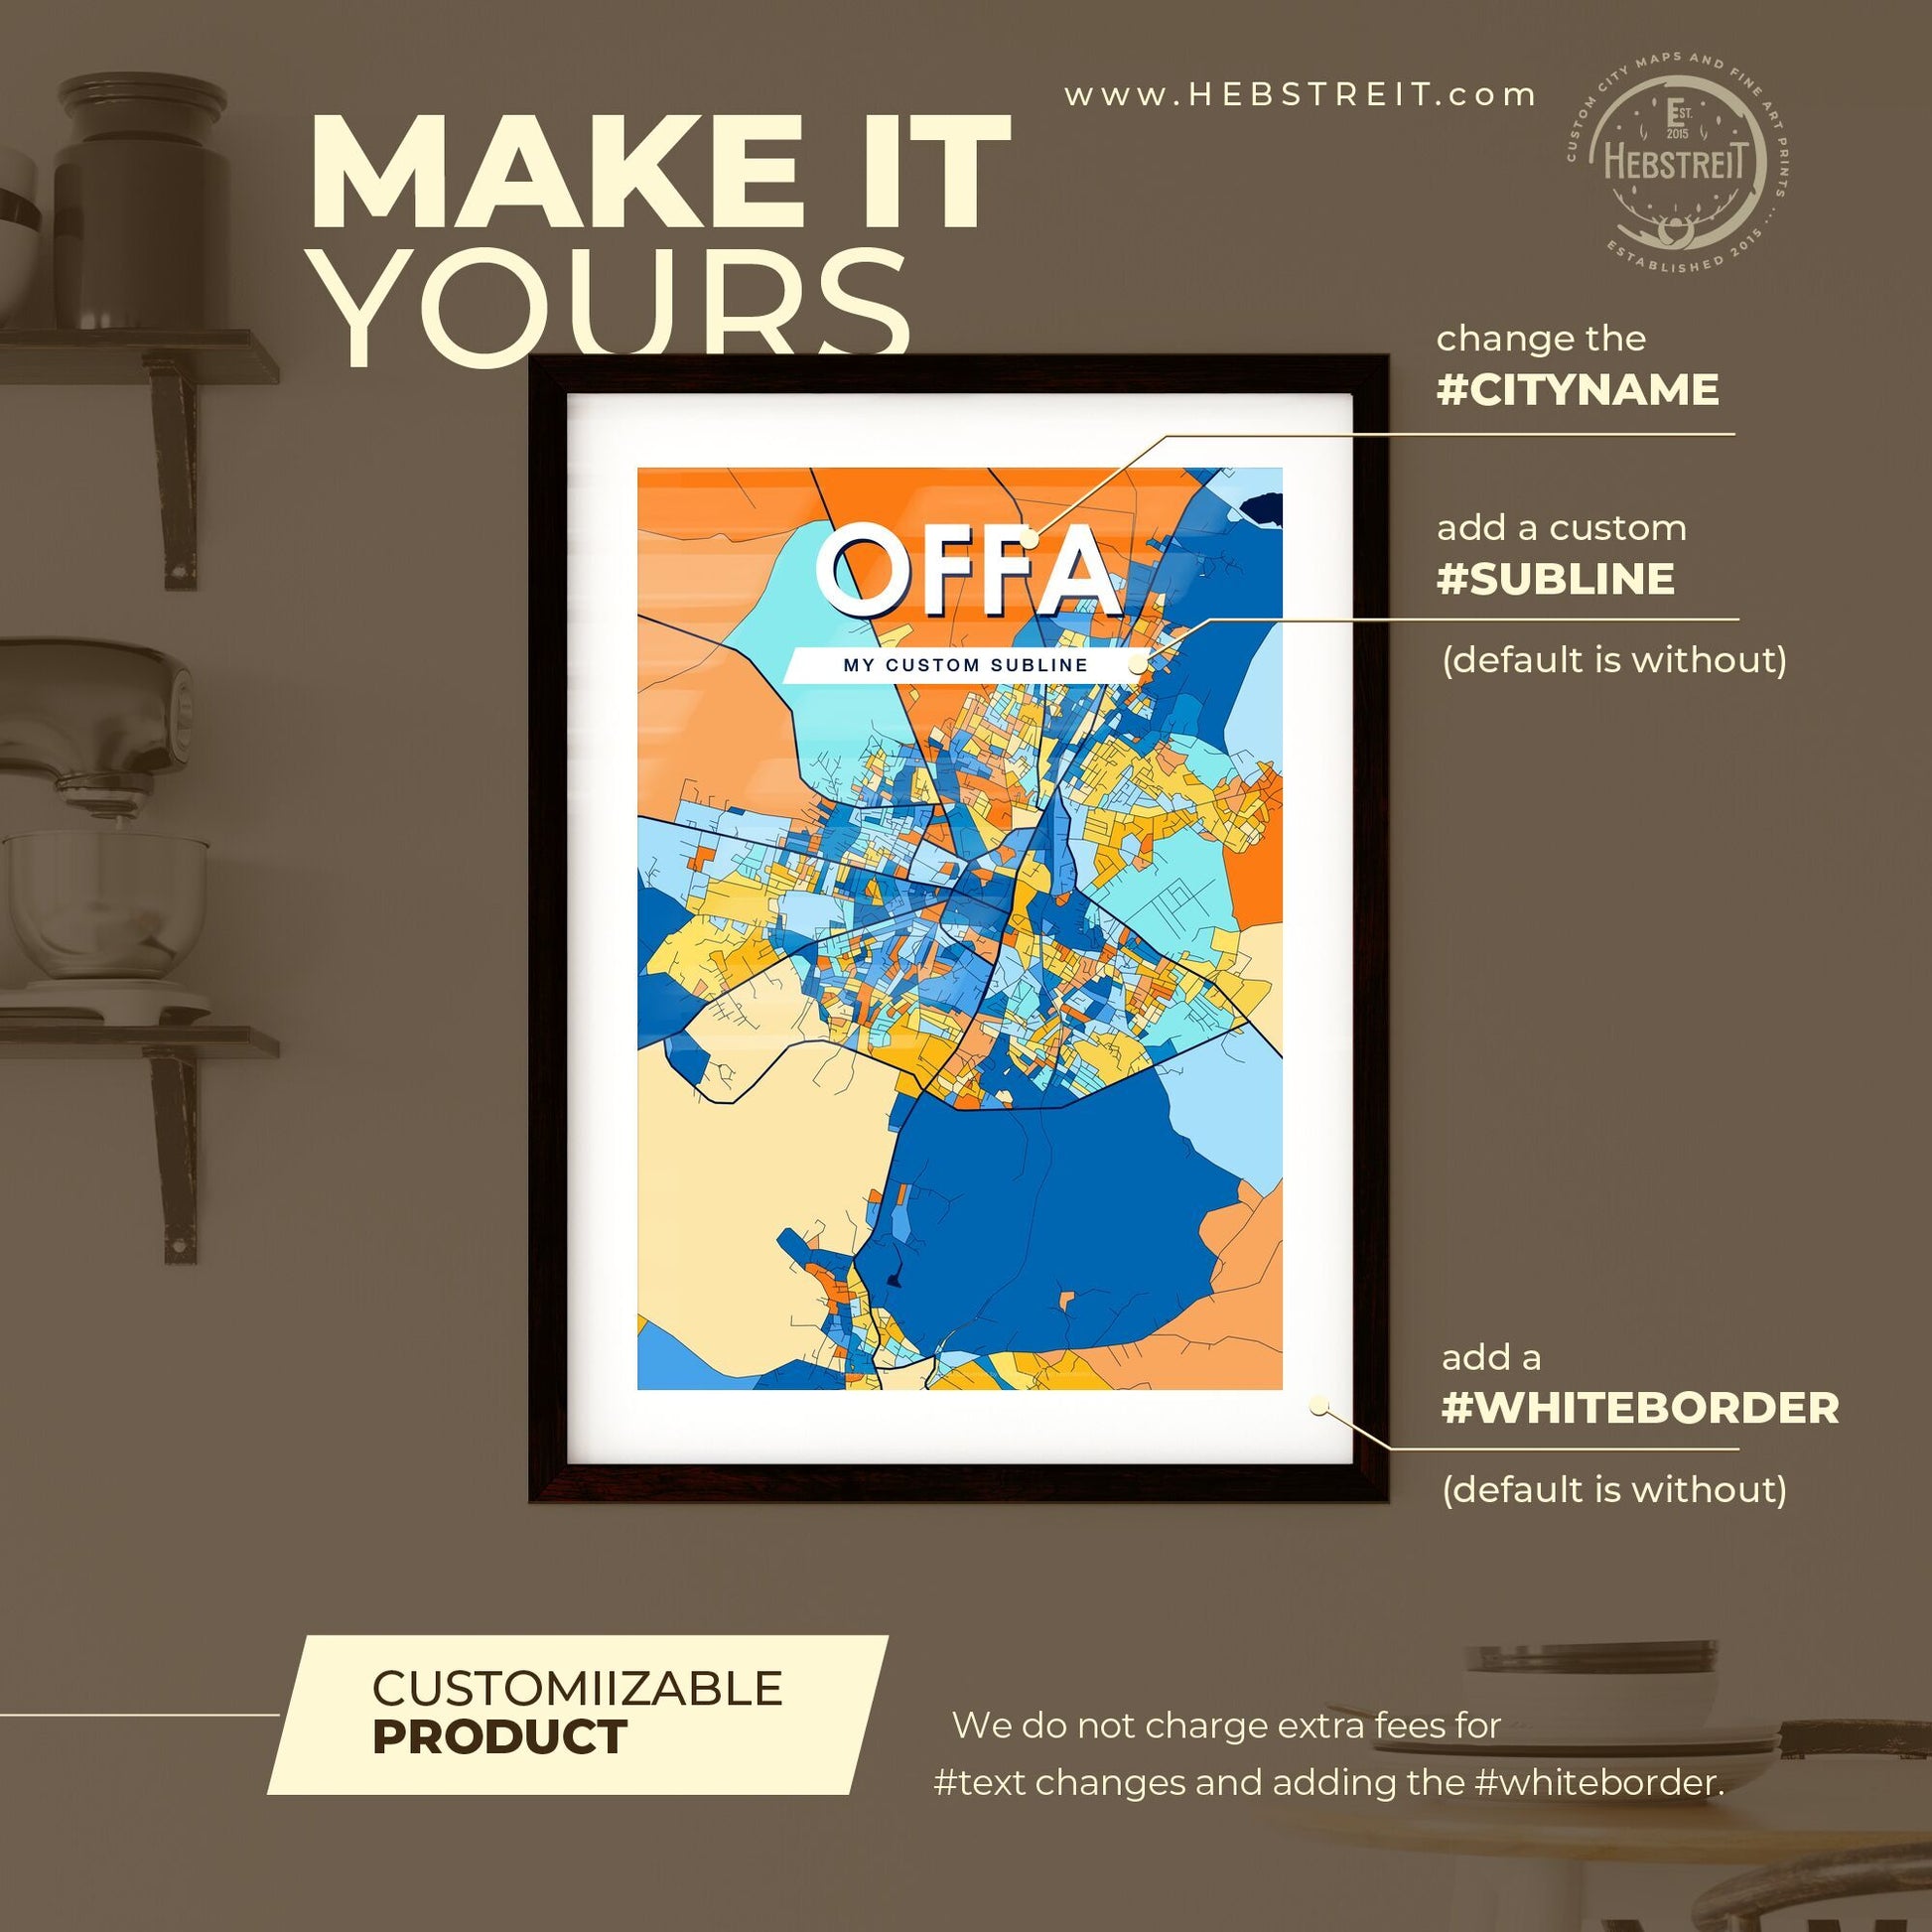 OFFA NIGERIA Vibrant Colorful Art Map Poster Blue Orange